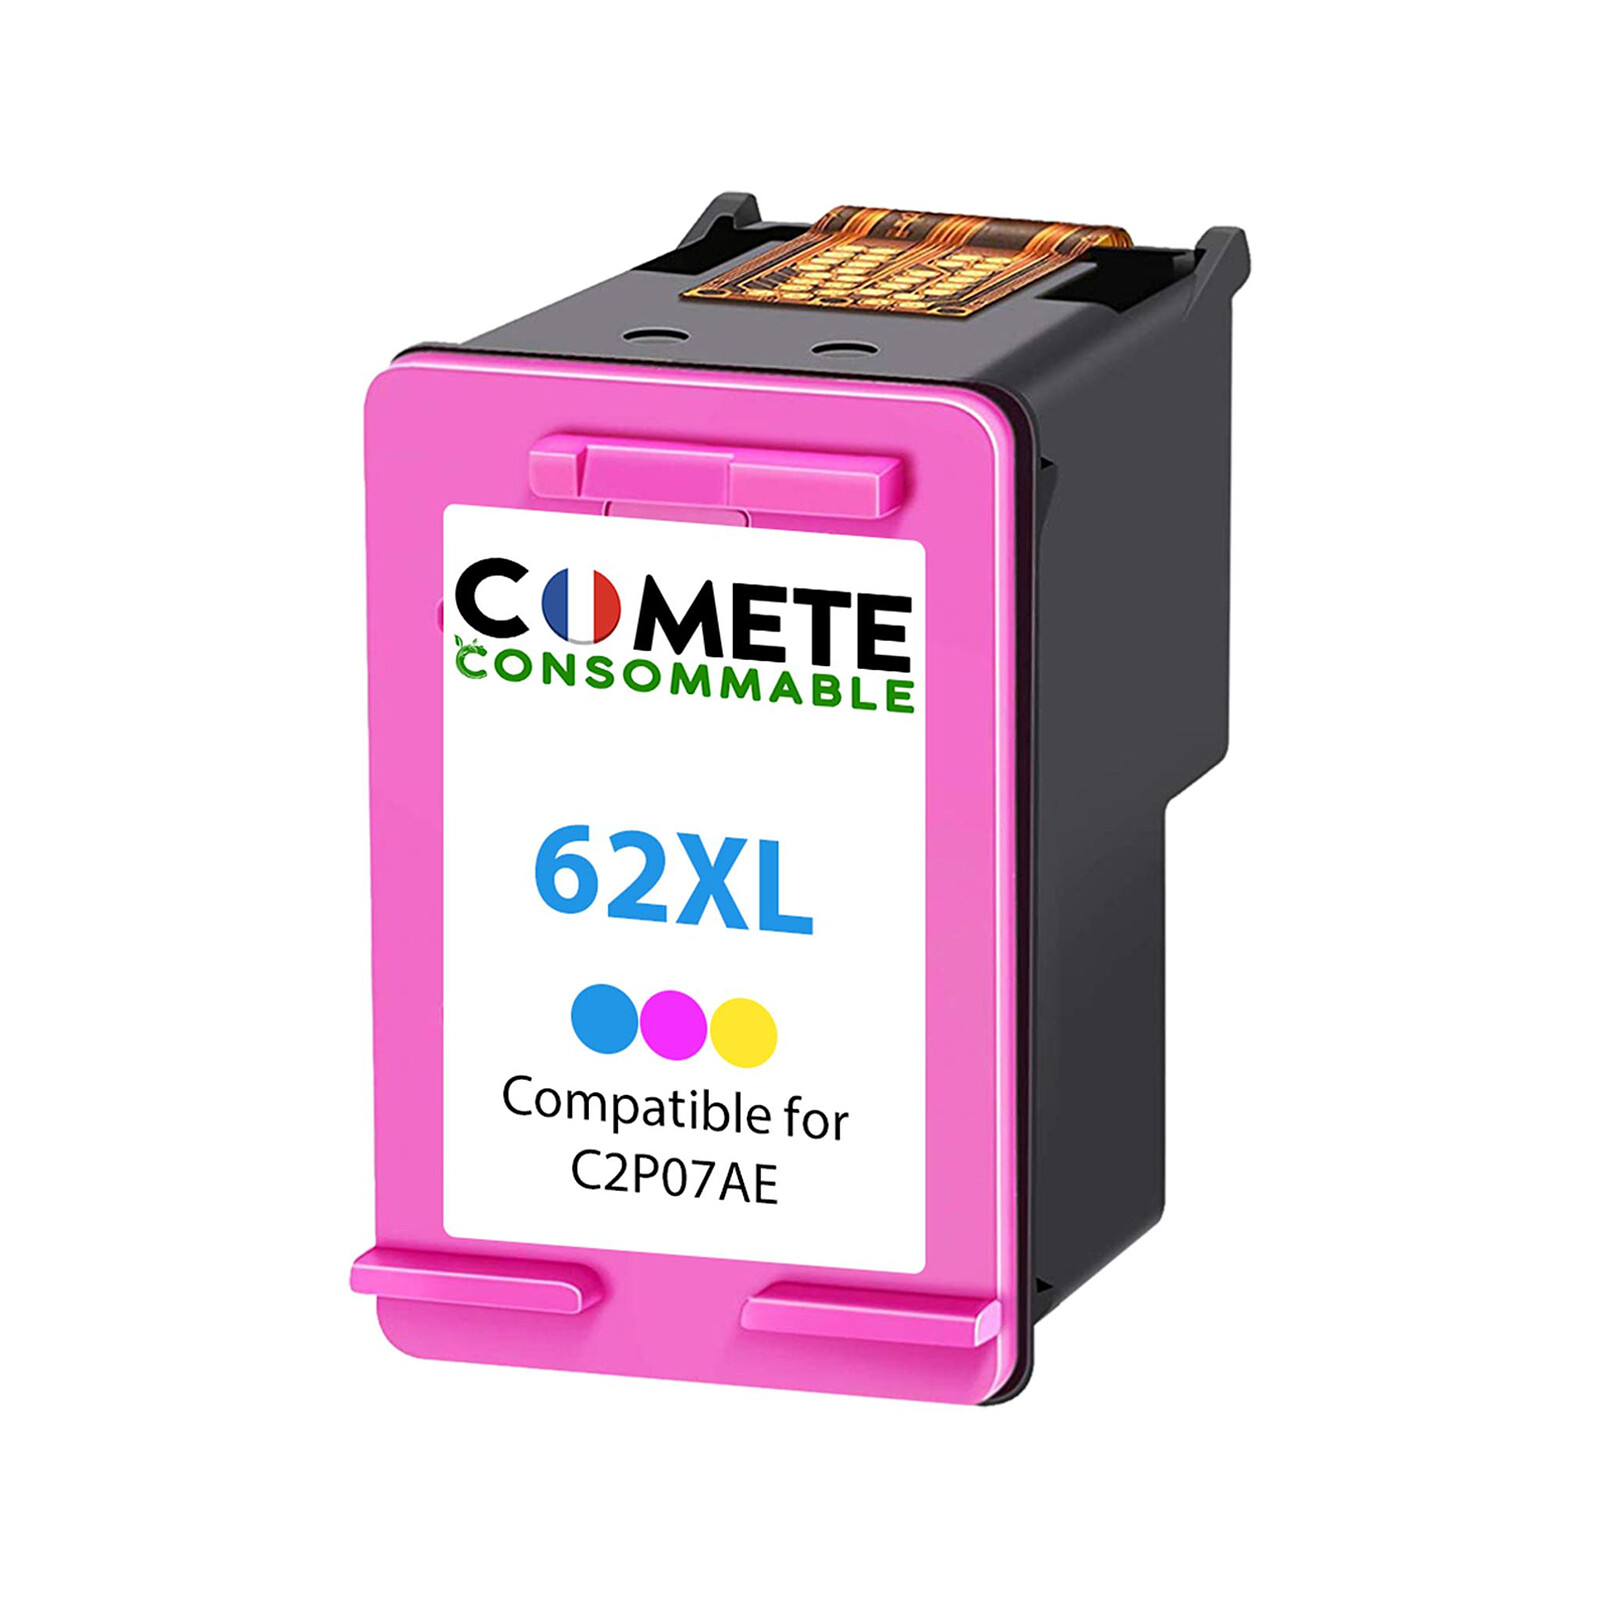 COMETE - 62XL - 1 cartouche compatible HP 62/HP 62XL - Couleur - Marque  française - Cartouche imprimante - LDLC